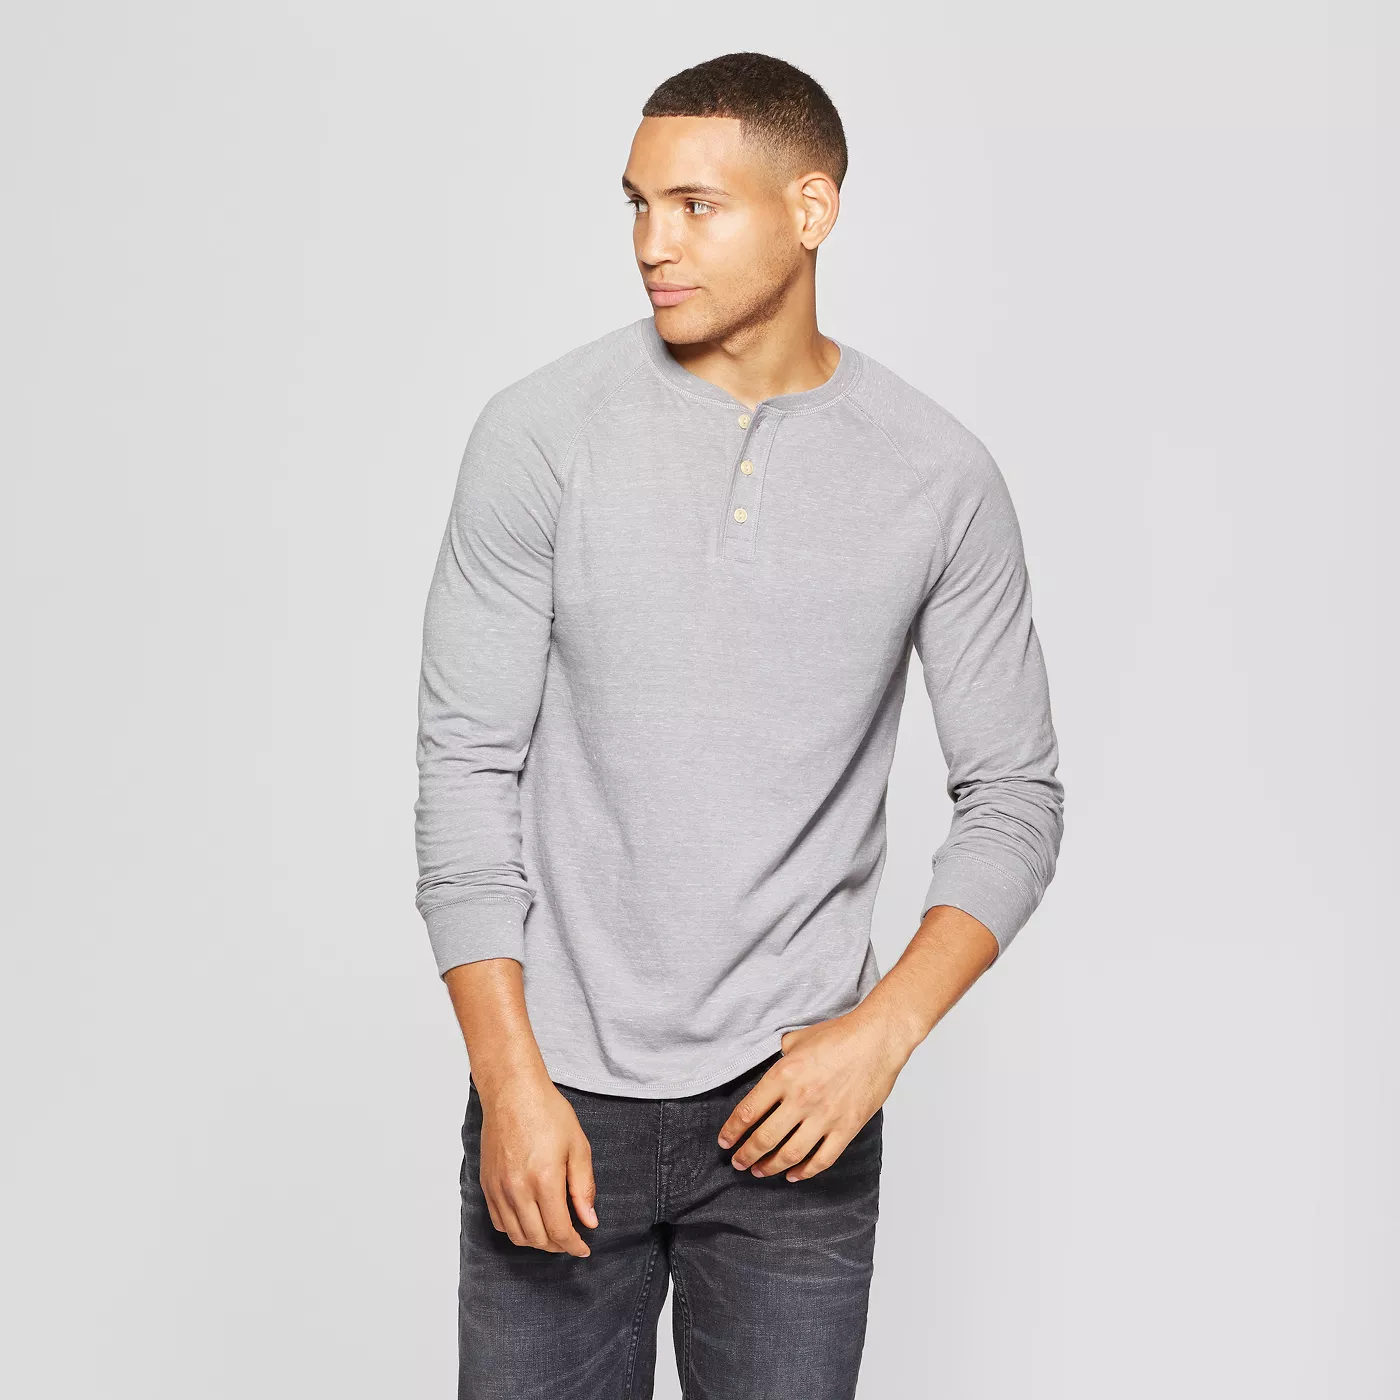 Men's outfit inspiration Regular Fit Long Sleeve Jersey Henley Shirt - Goodfellow & Co